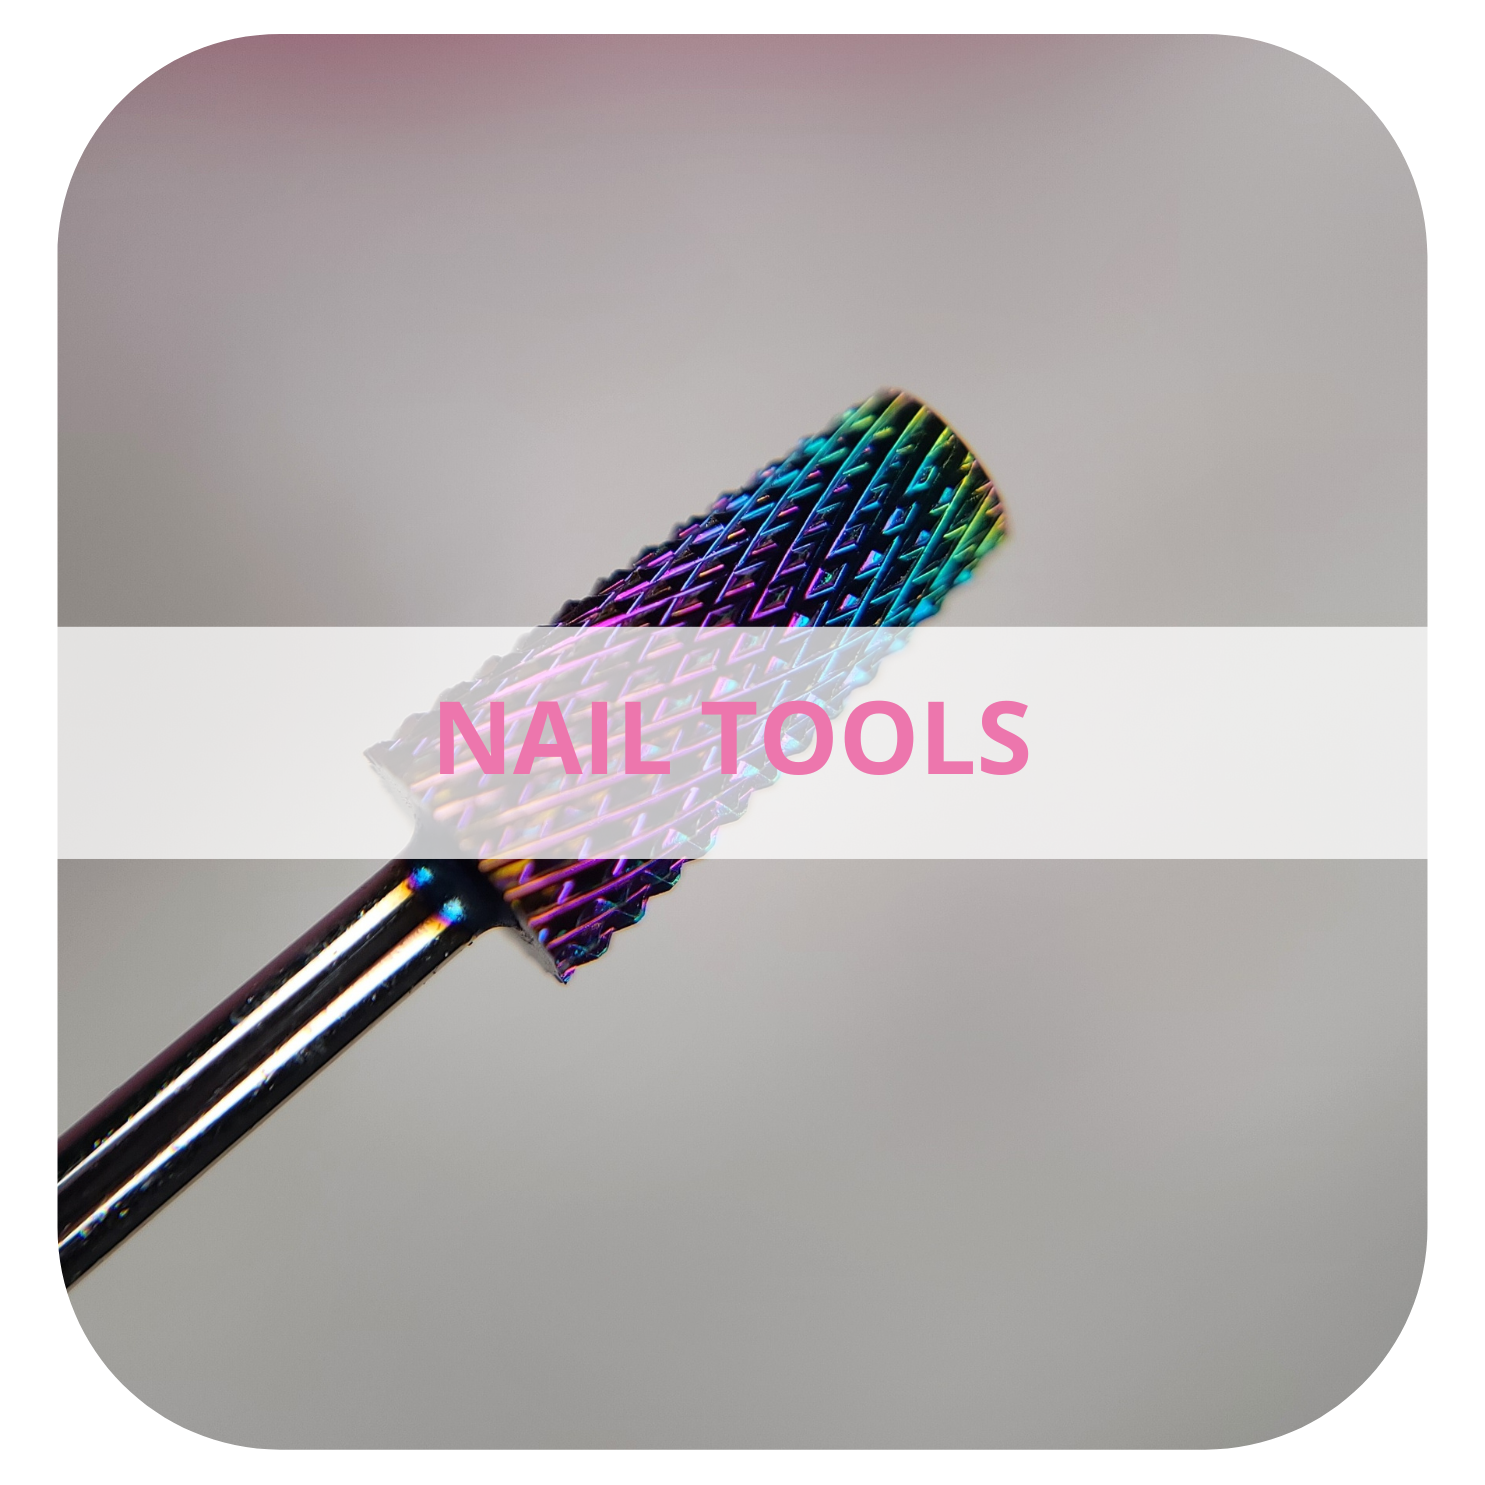 Nail tools